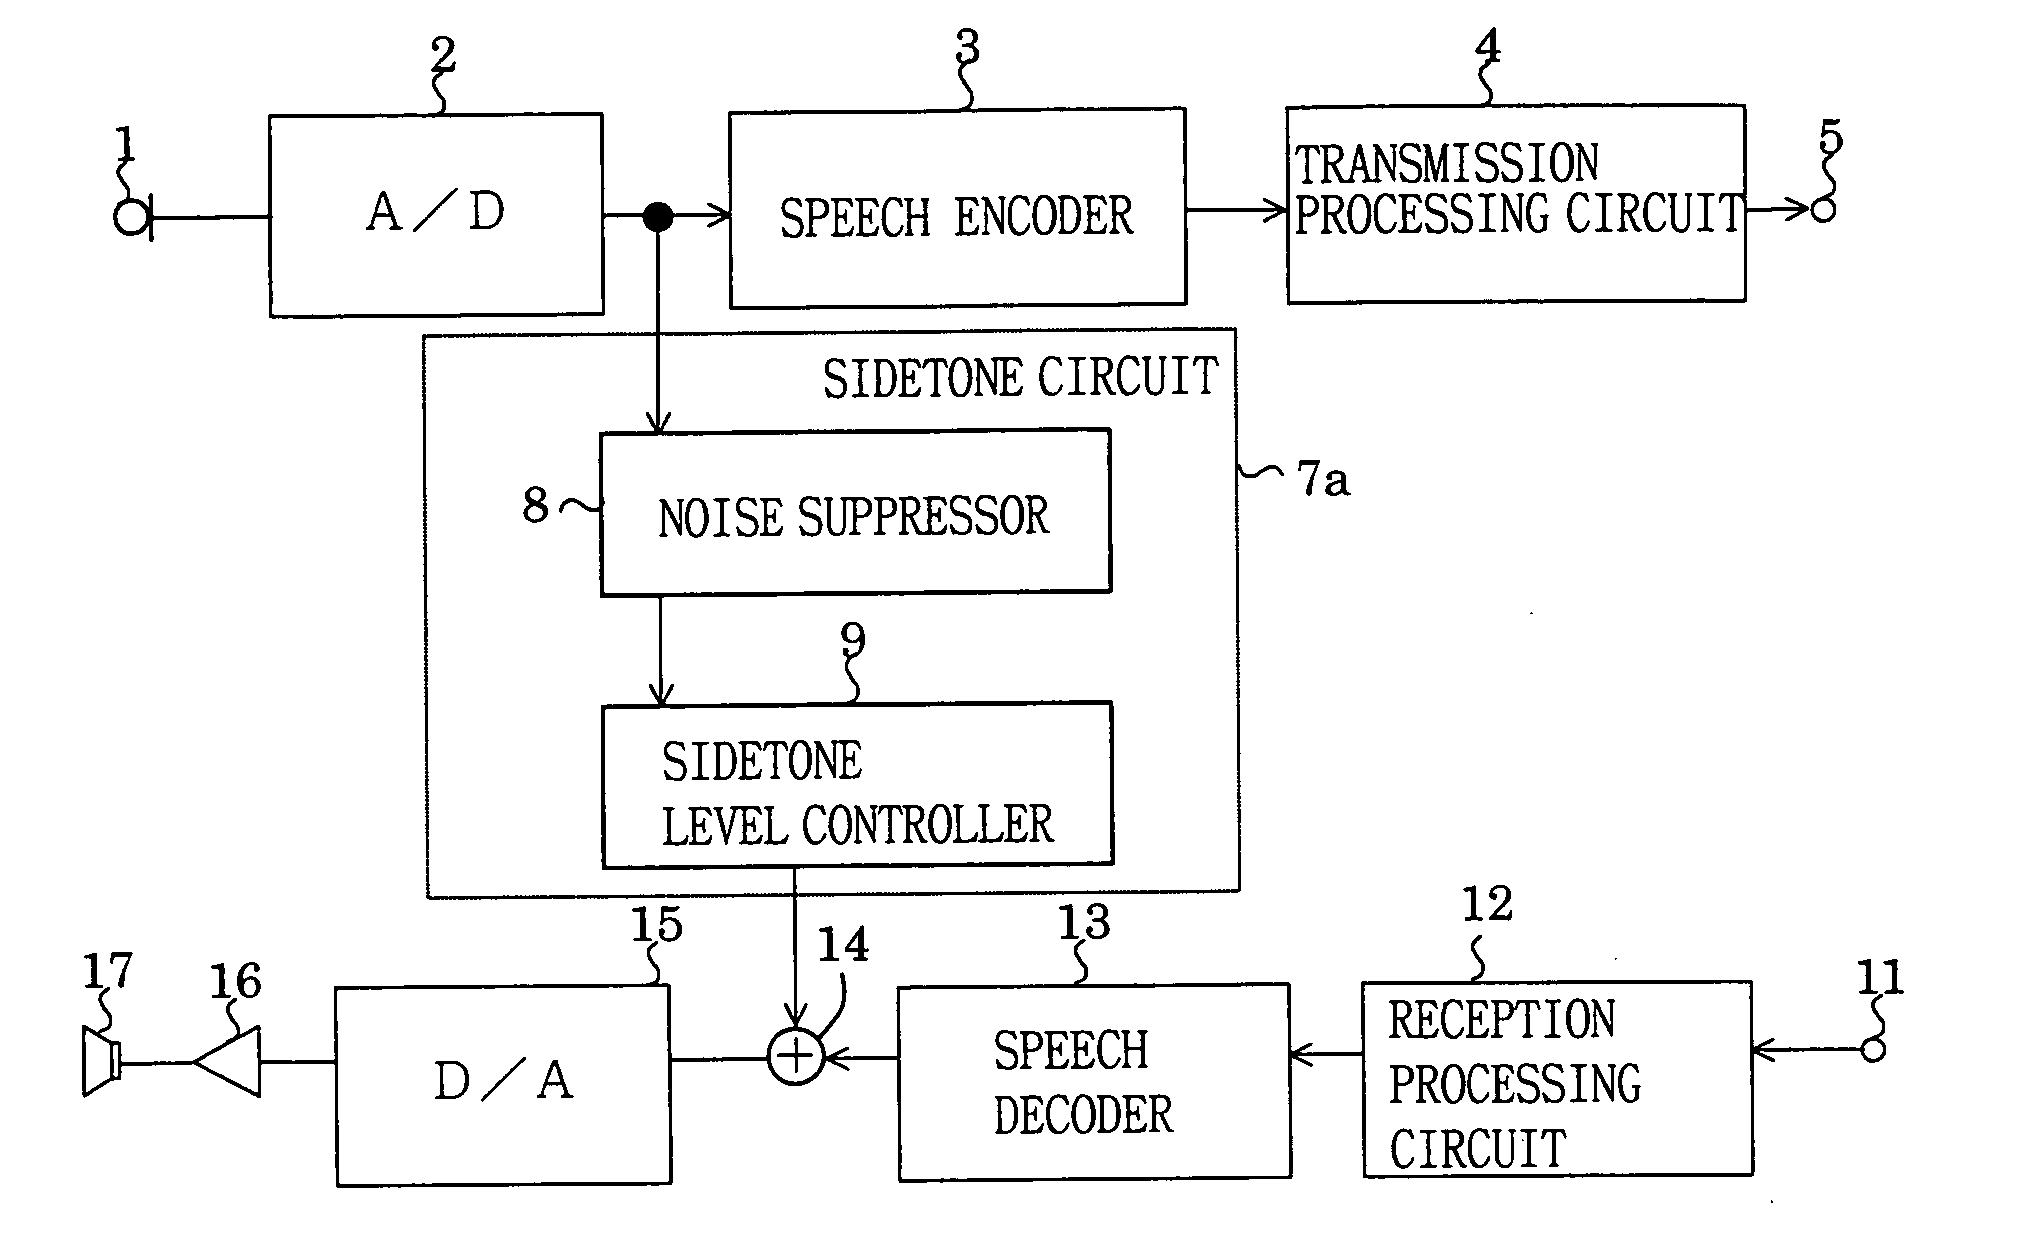 Transmitter-receiver